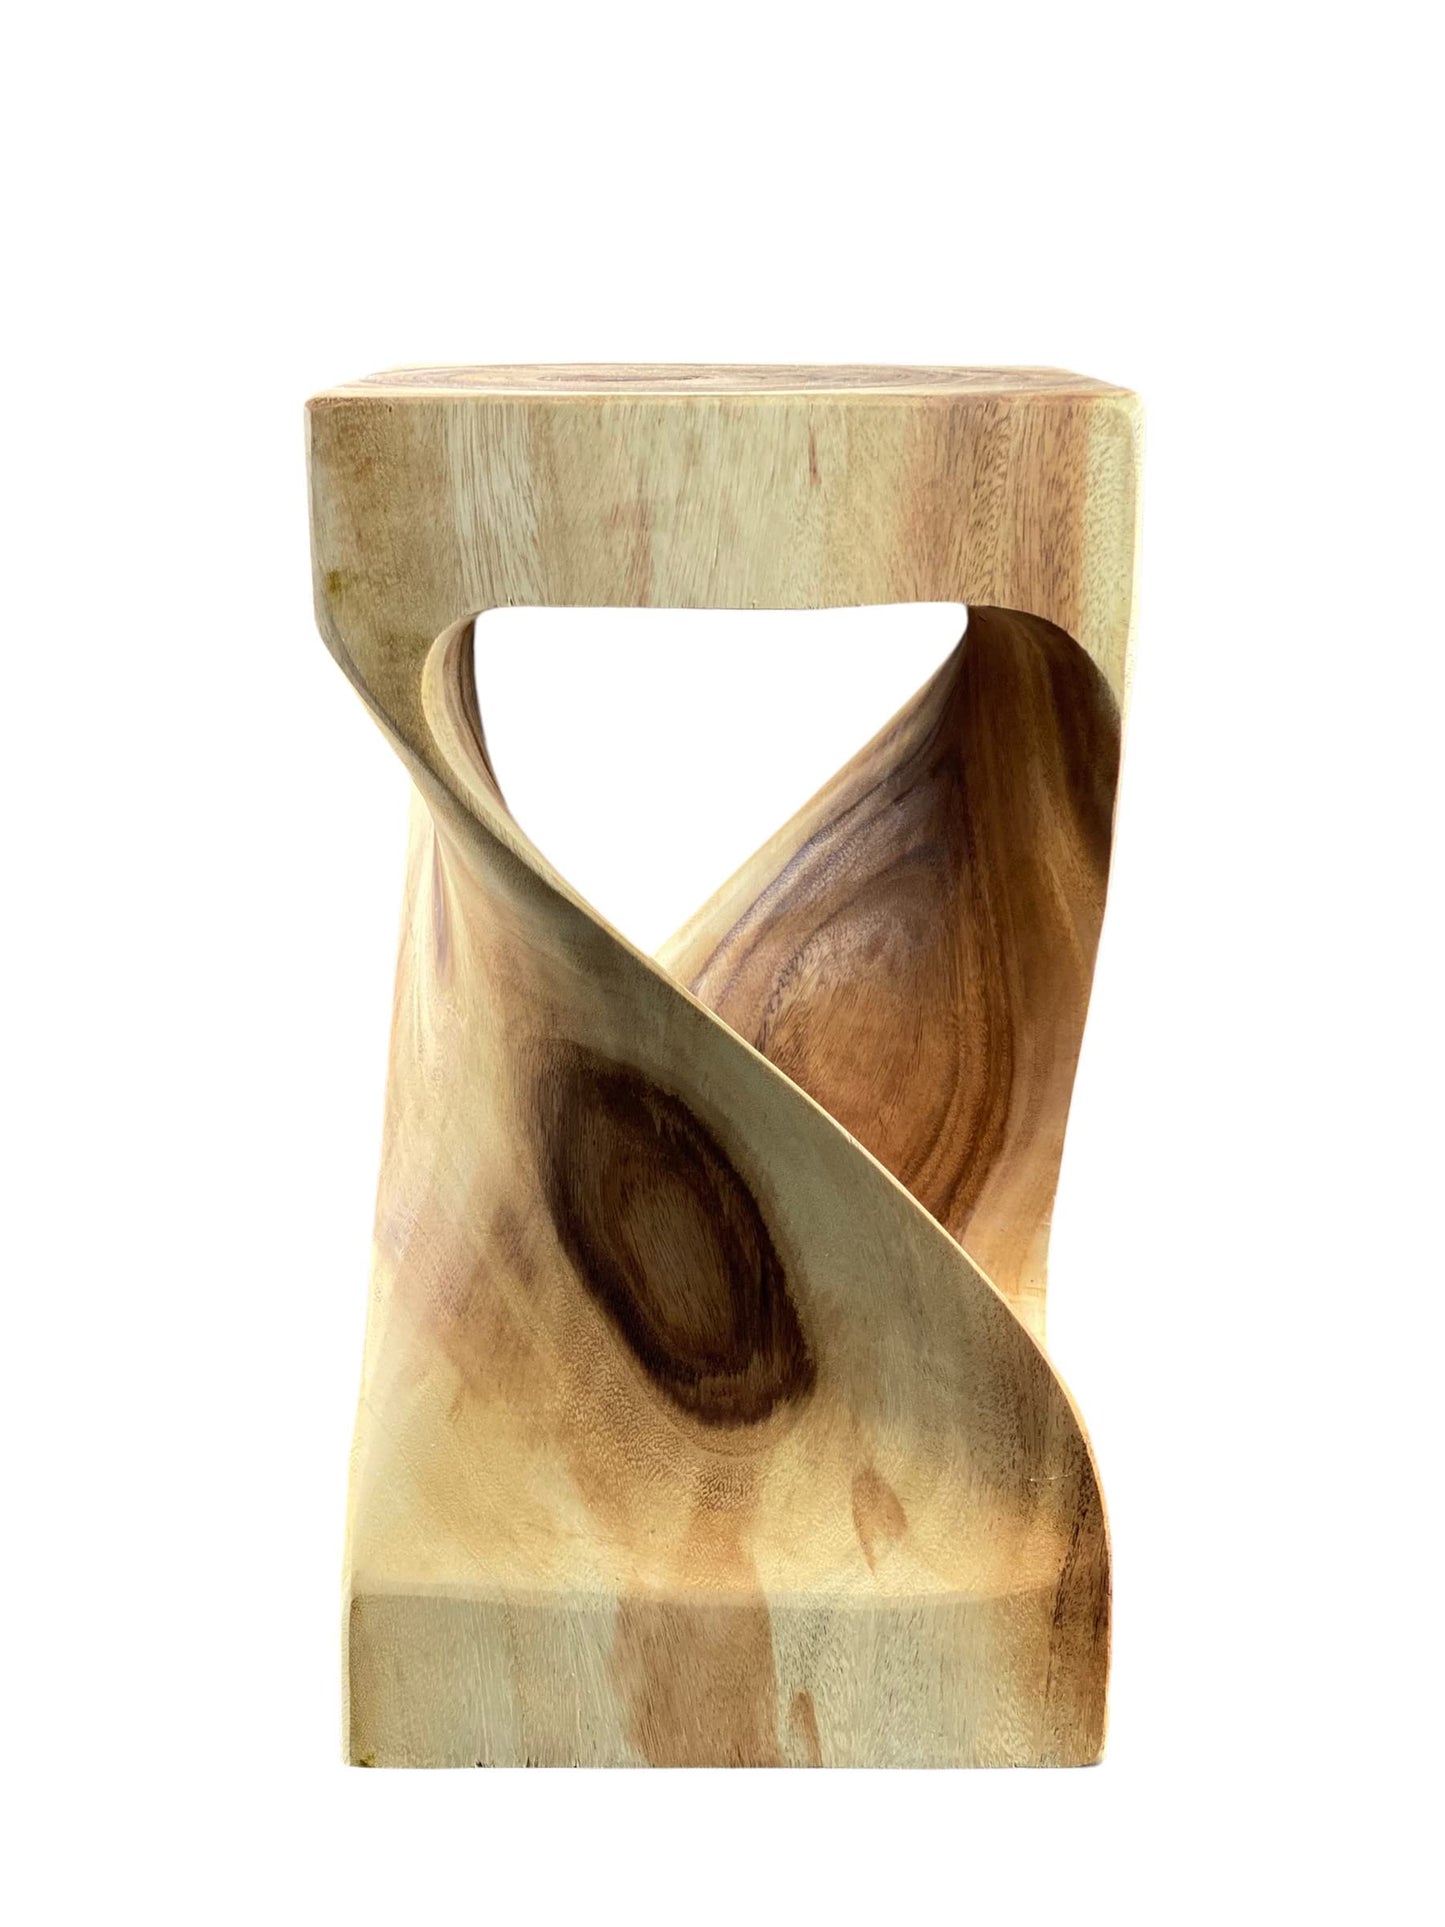 Holzhocker - Beistelltisch Blumenhocker Ablagetisch - Unikat Handgefertigt  - Gedreht aus massivem Samanholz - 50x28x28 cm